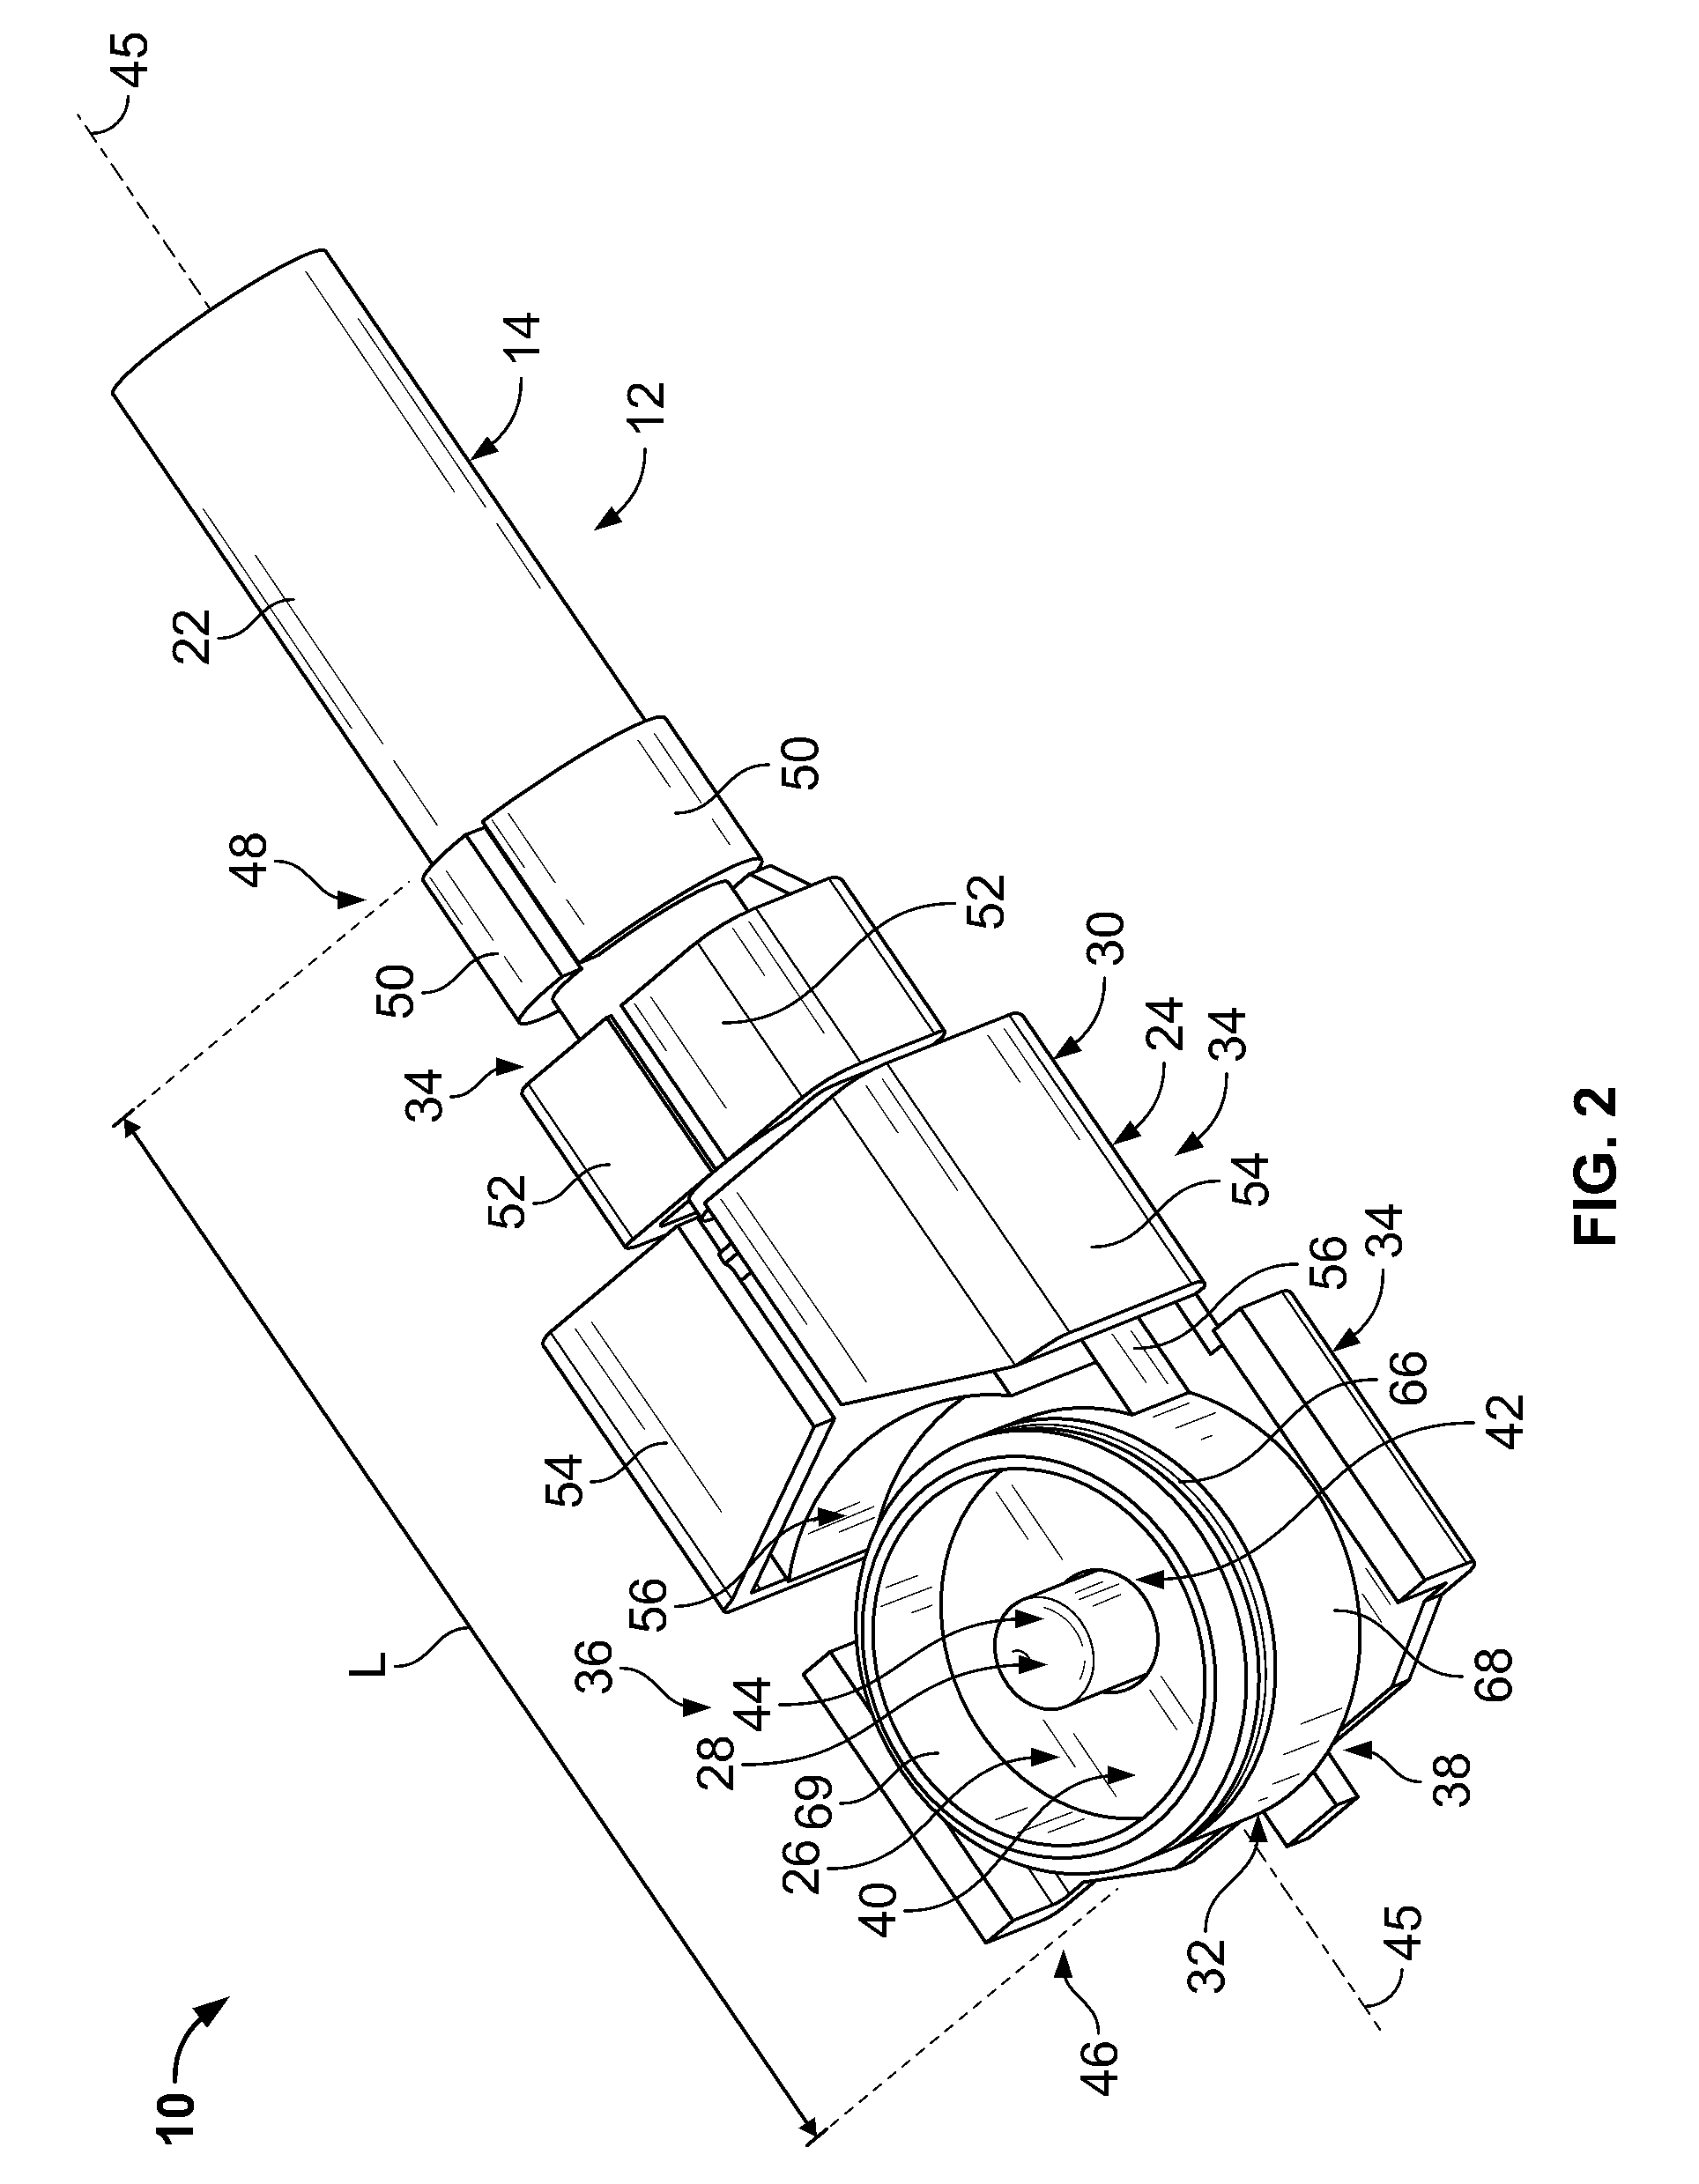 Ultraminiature coax connector